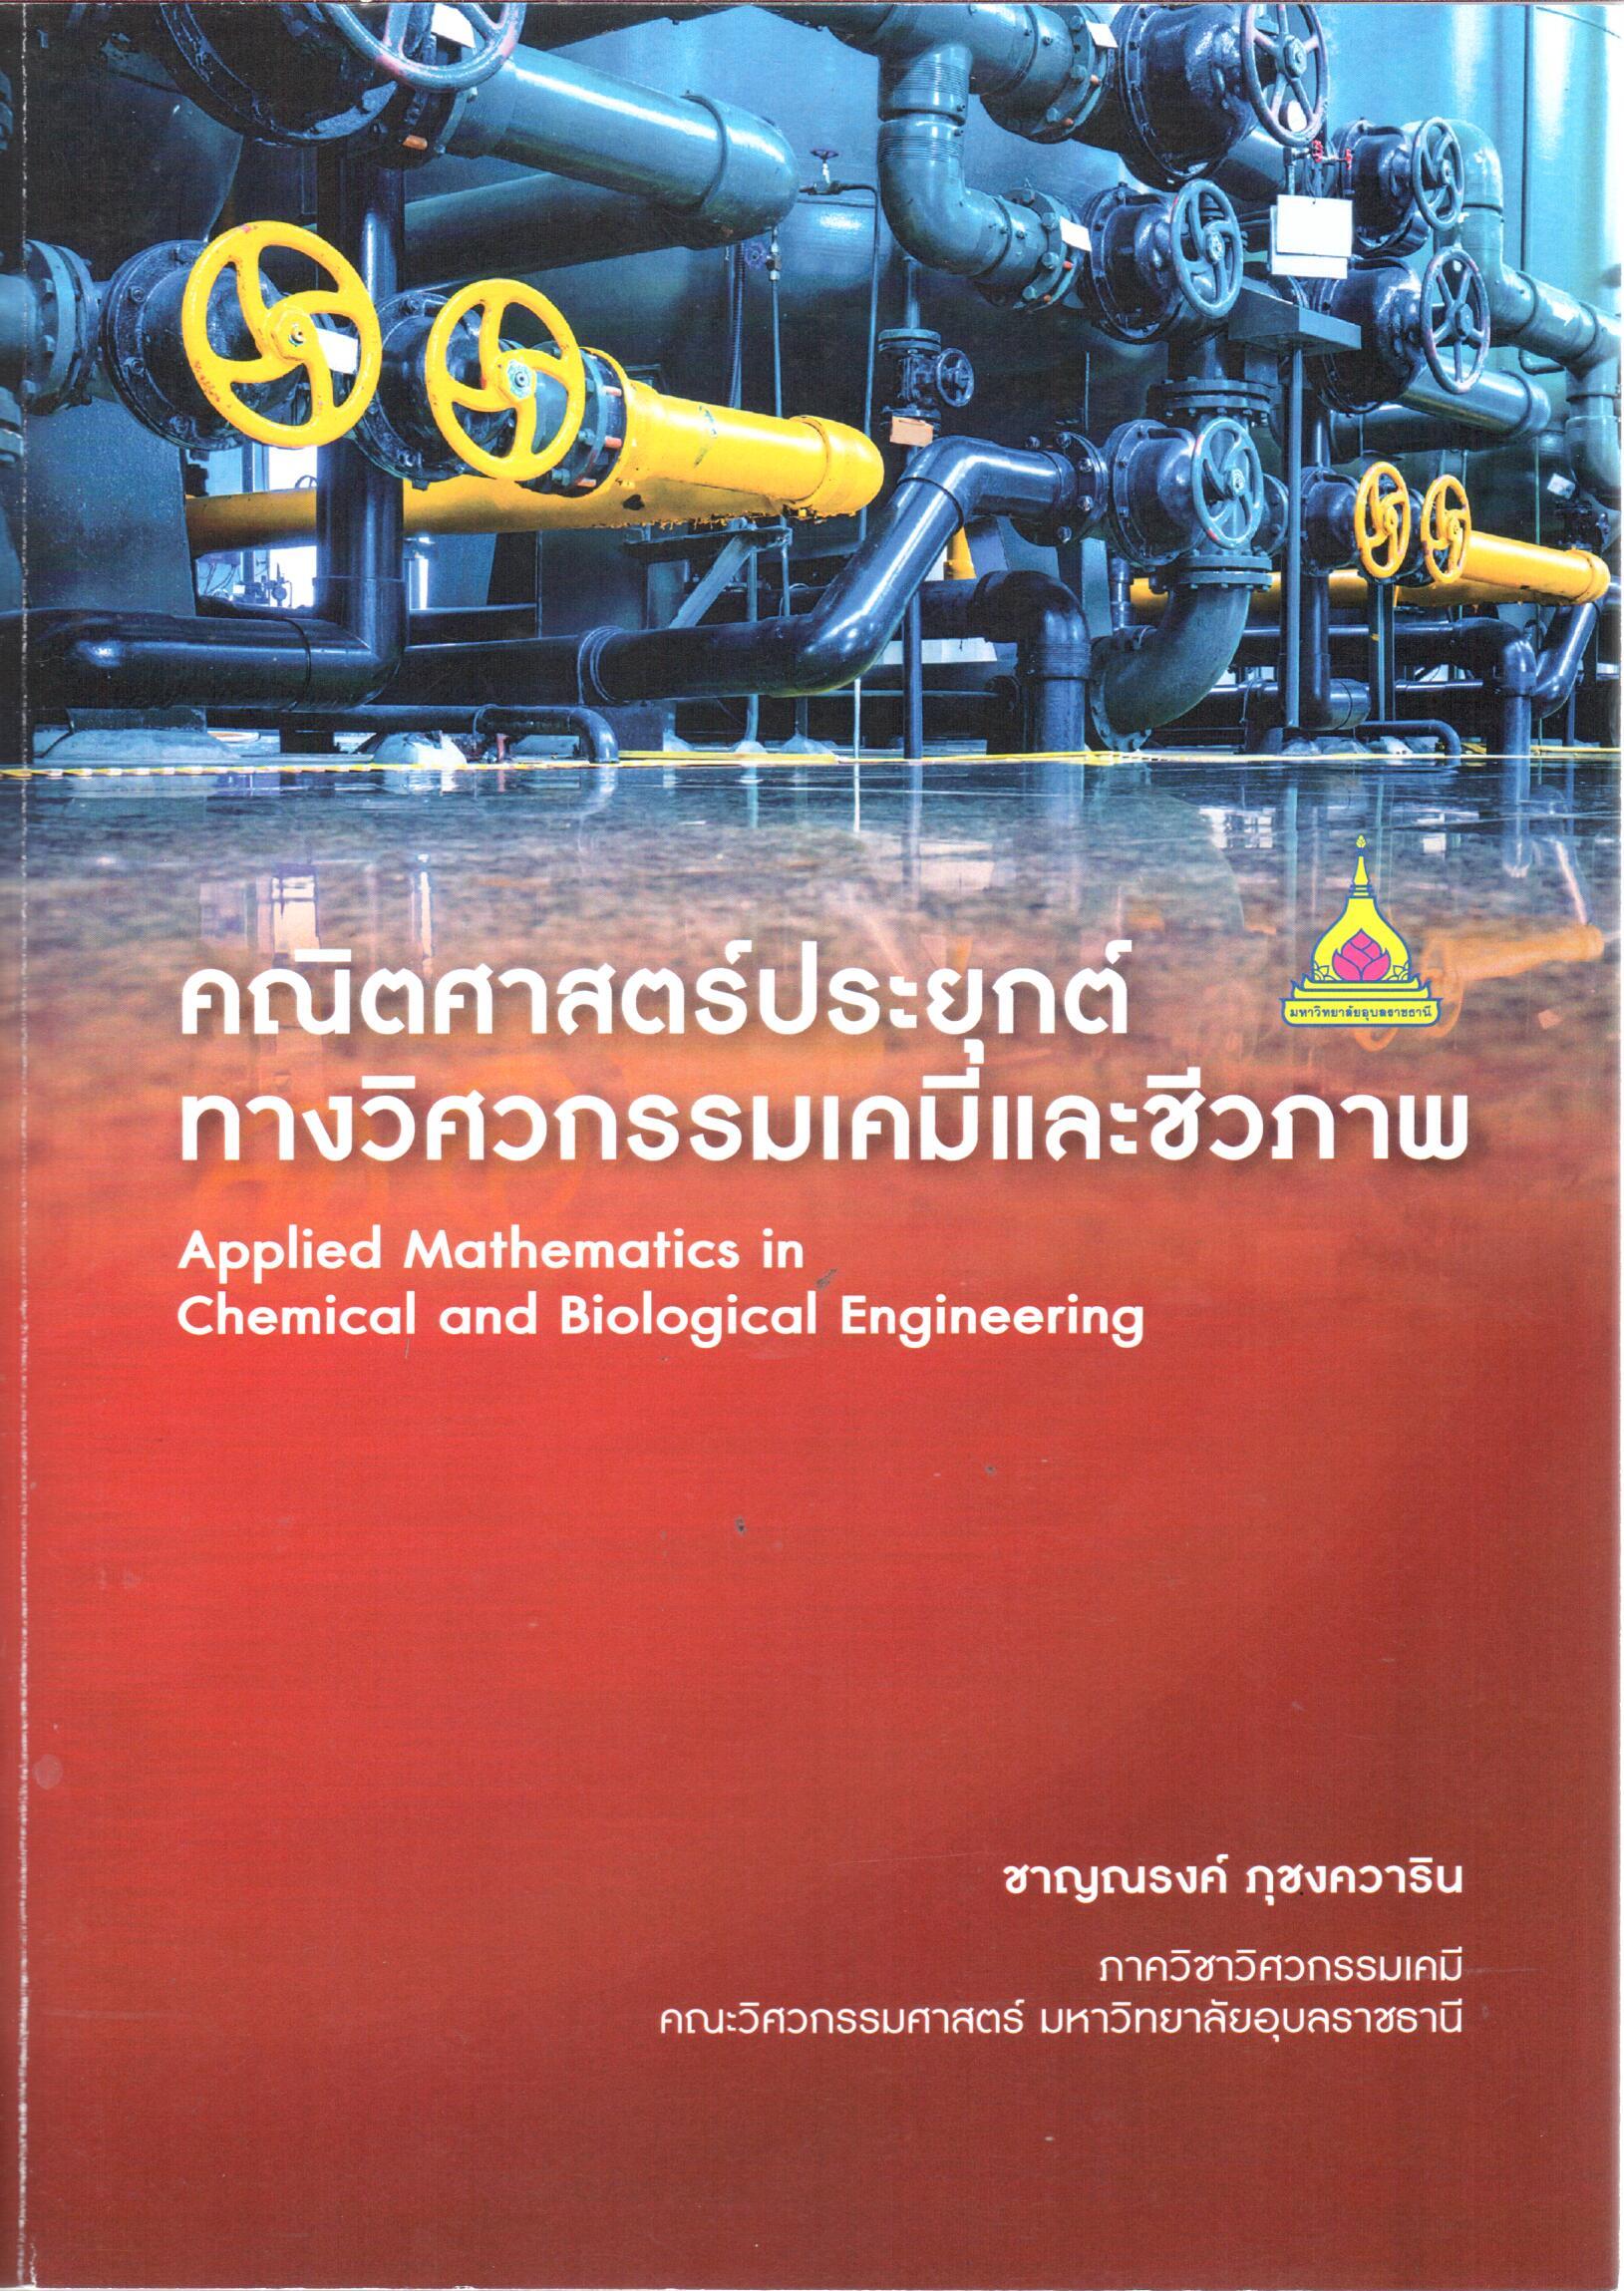 คณิตศาสตร์ประยุกต์ทางวิศวกรรมเคมีและชีวภาพ = Applied mathematics in chemil and biological engineering